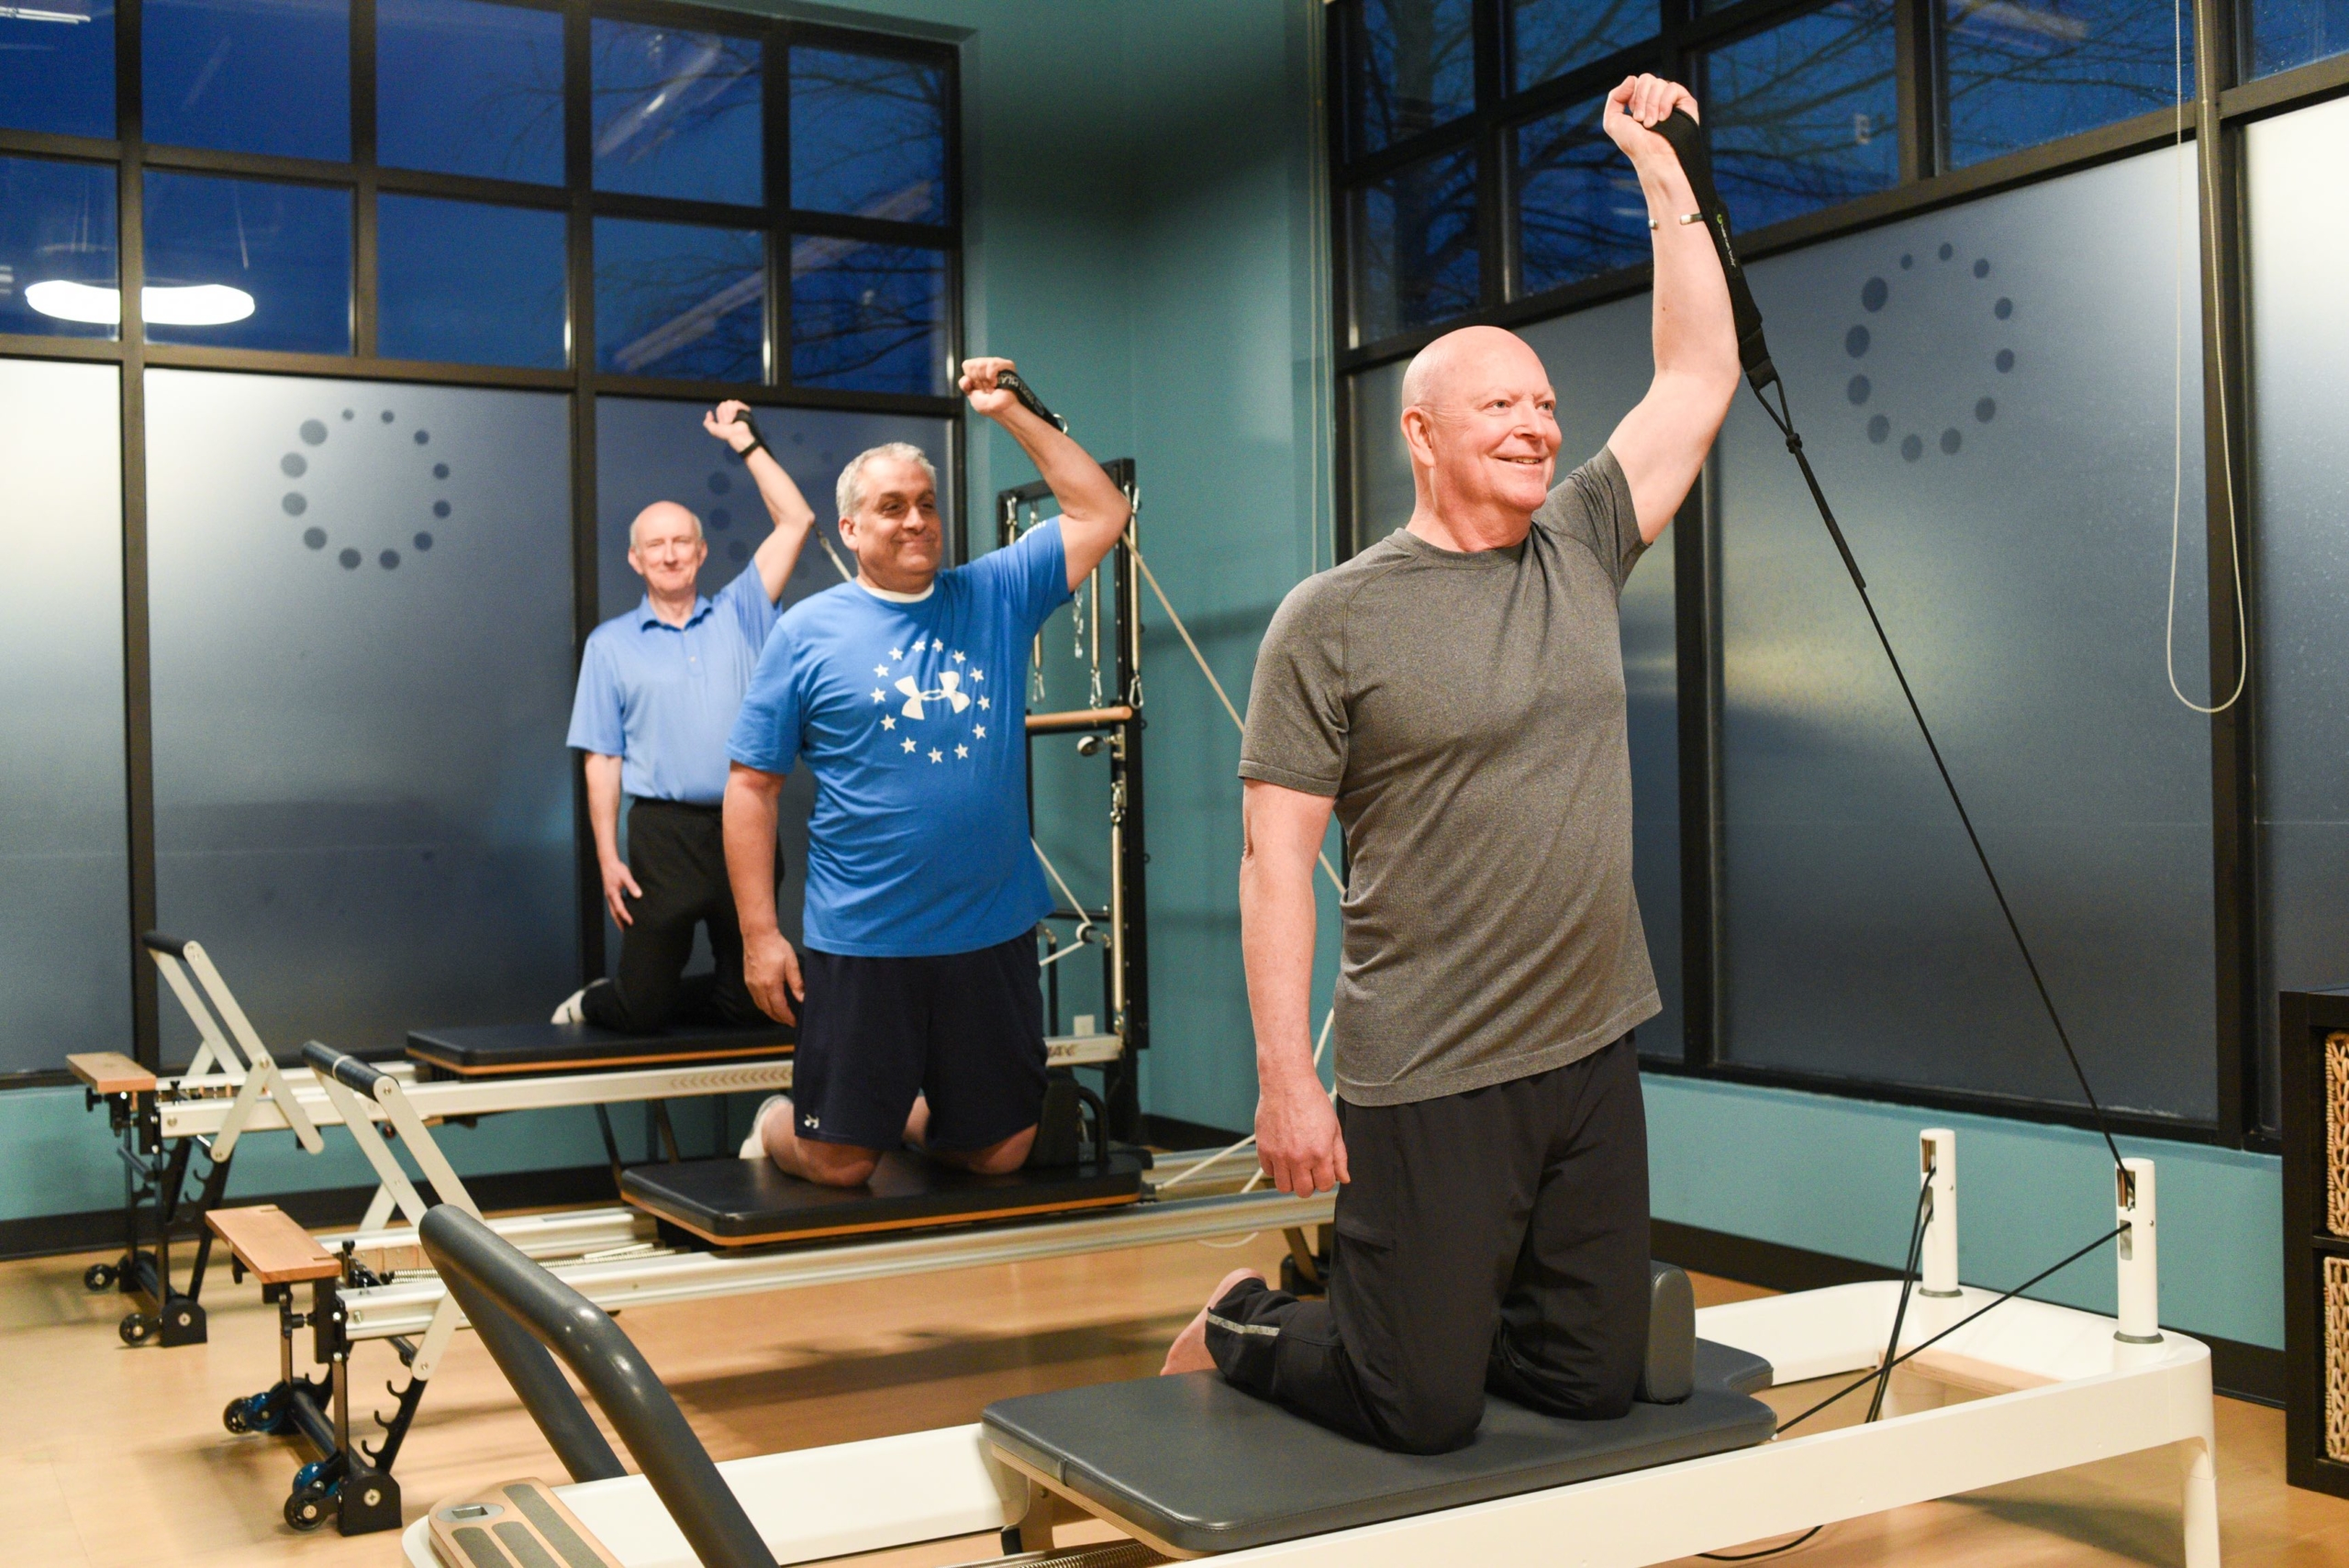 3 senior men doing Pilates Reformer arm exercises